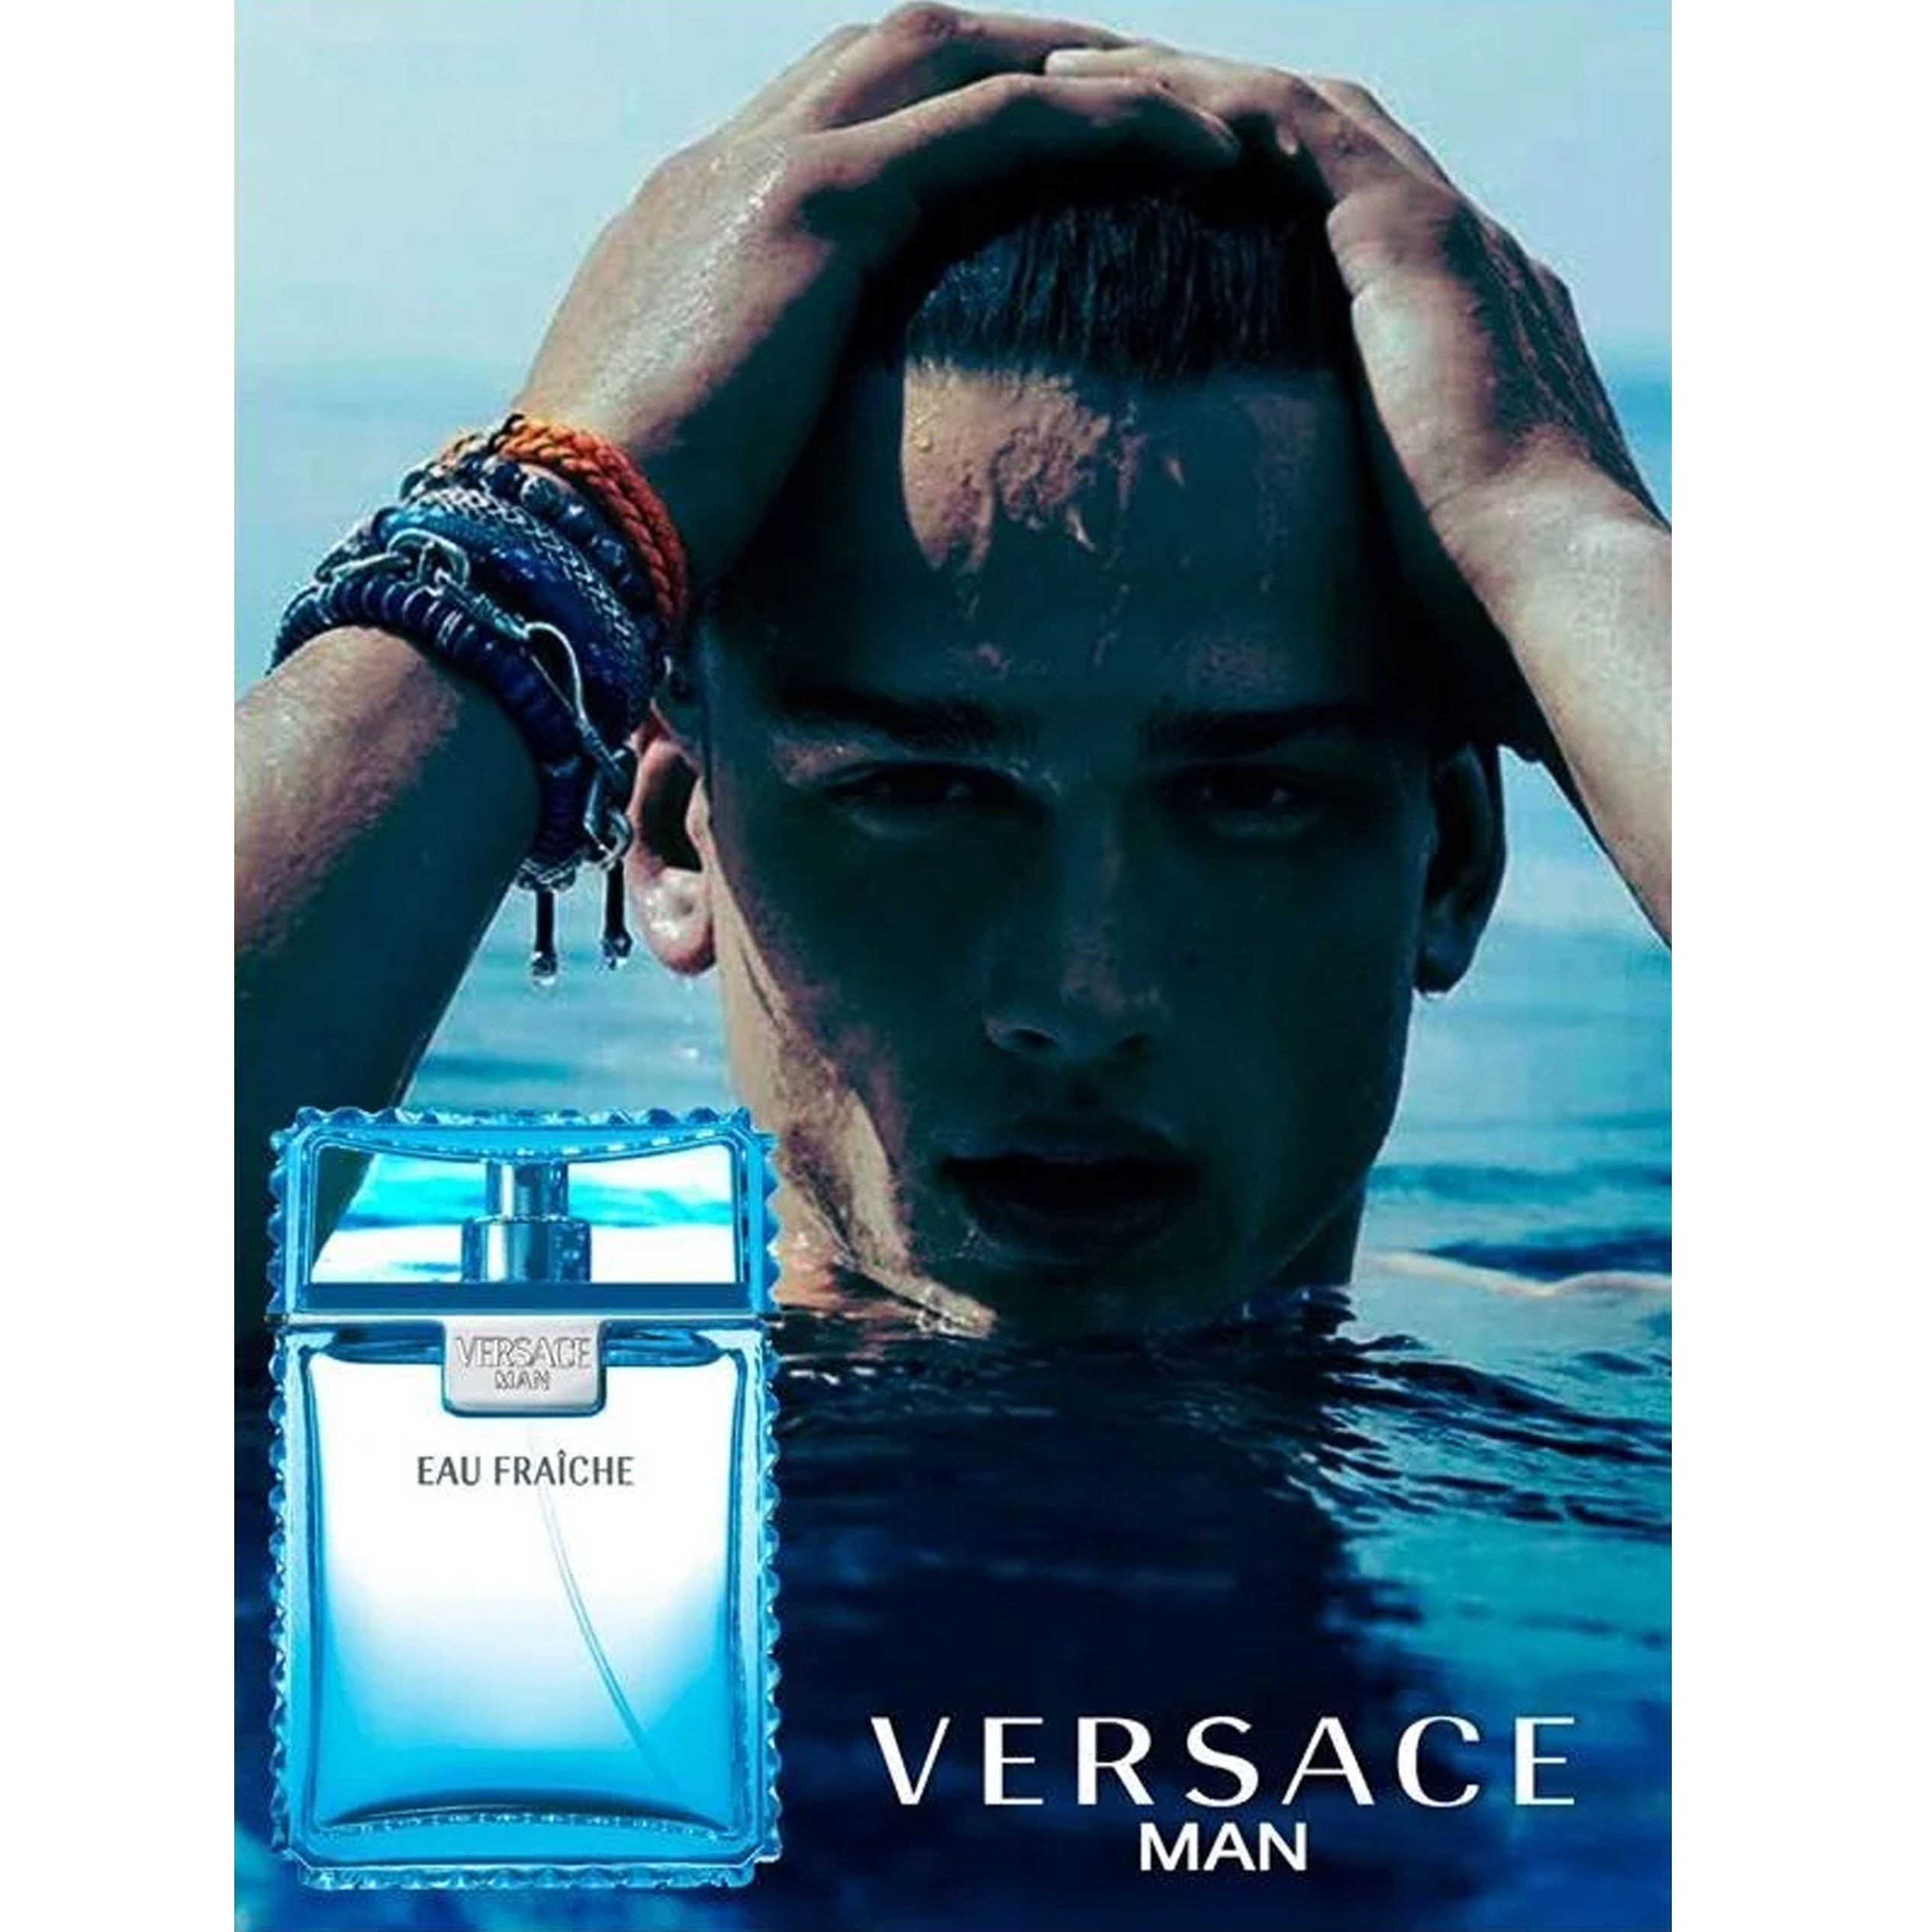 Versace Man Eau Fraiche   (Perfume Replica Con Fragancia Importada)- Hombre